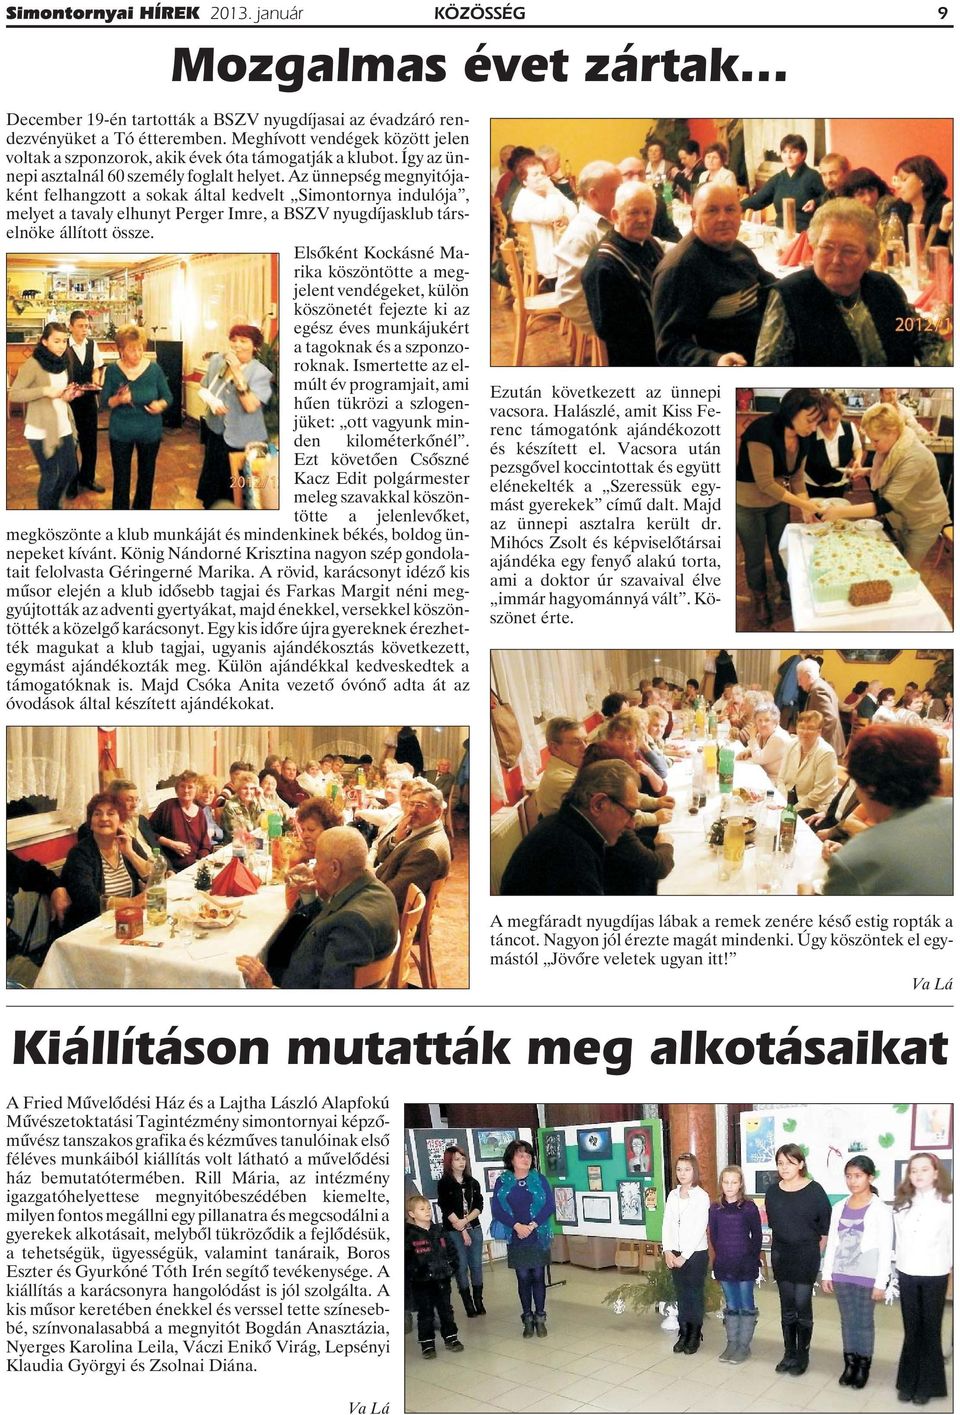 Az ünnepség megnyitójaként felhangzott a sokak által kedvelt Simontornya indulója, melyet a tavaly elhunyt Perger Imre, a BSZV nyugdíjasklub társelnöke állított össze.